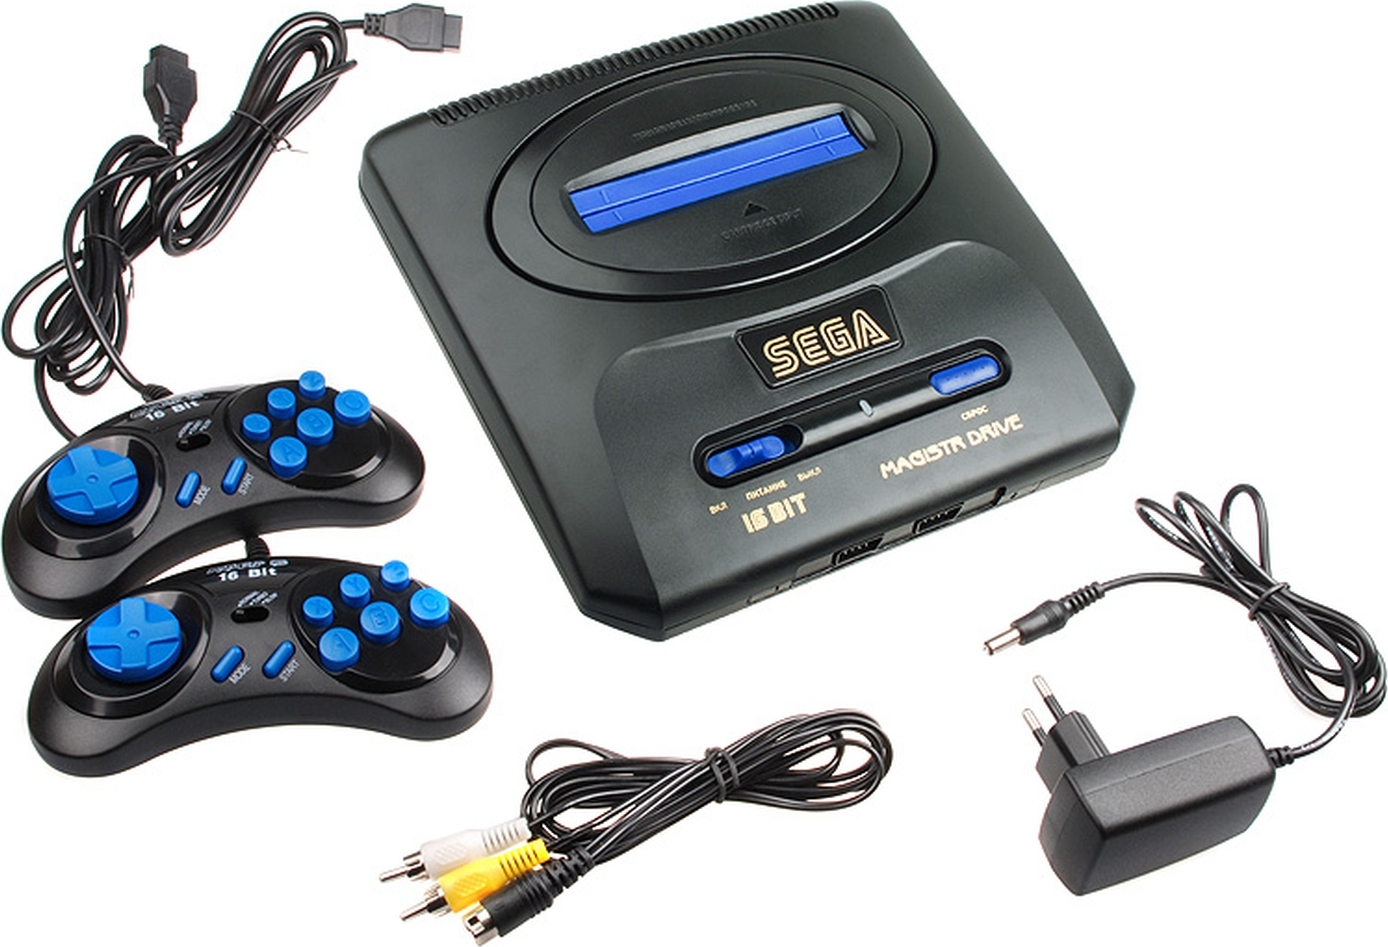 Приставки 16 бит купить. Игровая приставка Sega Magistr Drive 2 160 игр. Игровая приставка Sega Mega Drive 2. Sega 16 bit Magistr Drive x. Игровая приставка Sega Mega Drive Magistr Titan 2 conskdn40 черный.